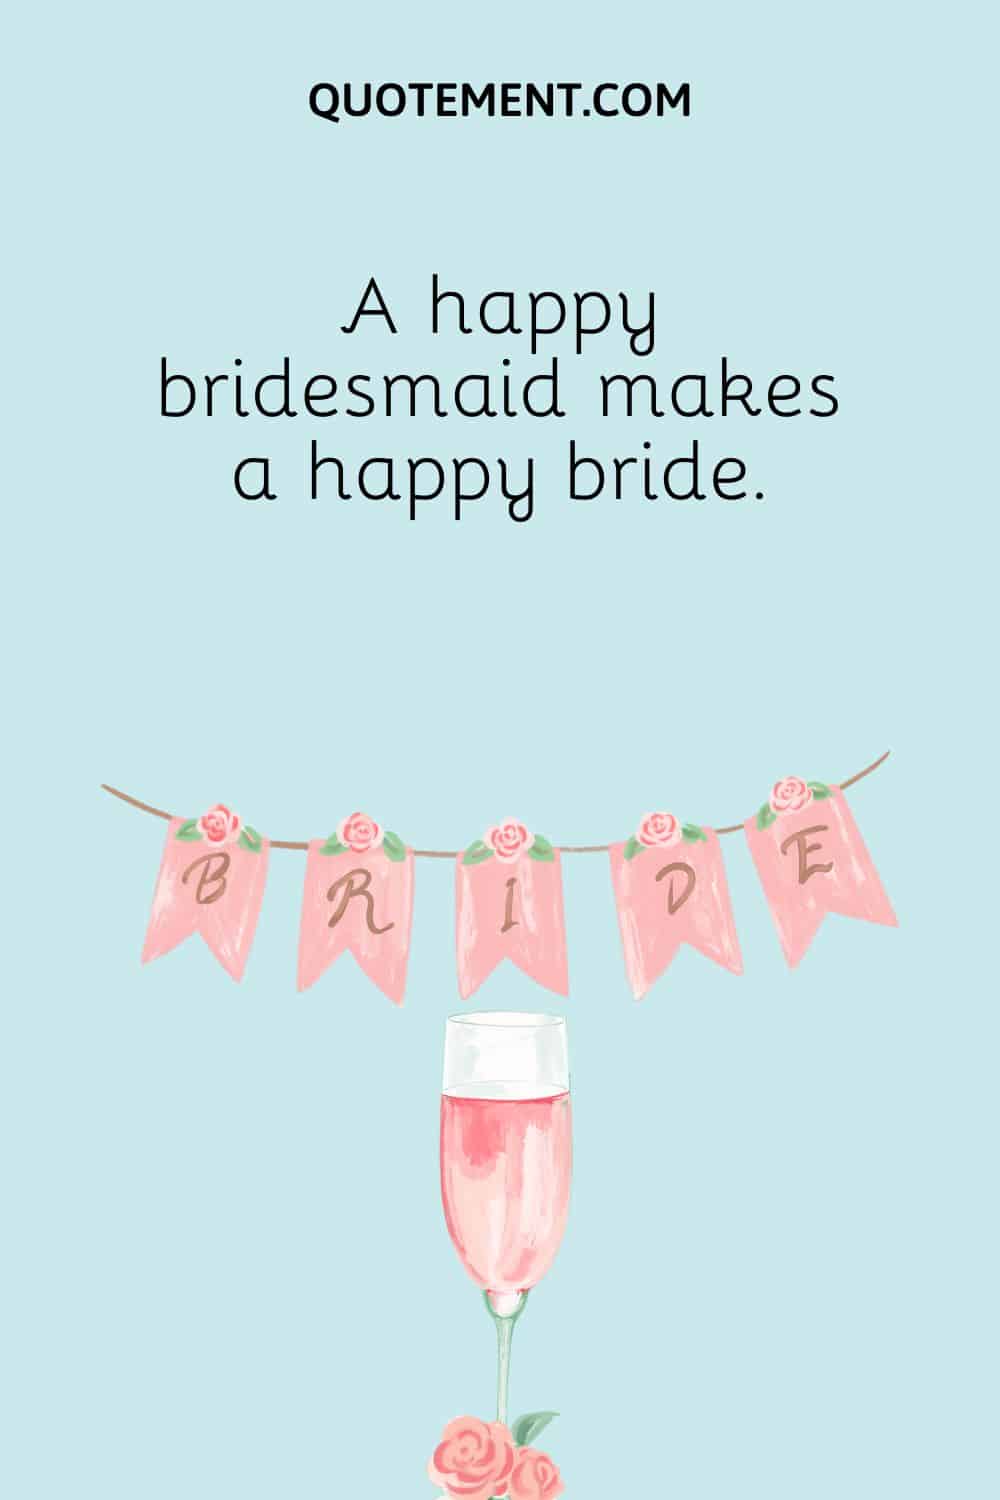 A happy bridesmaid makes a happy bride.